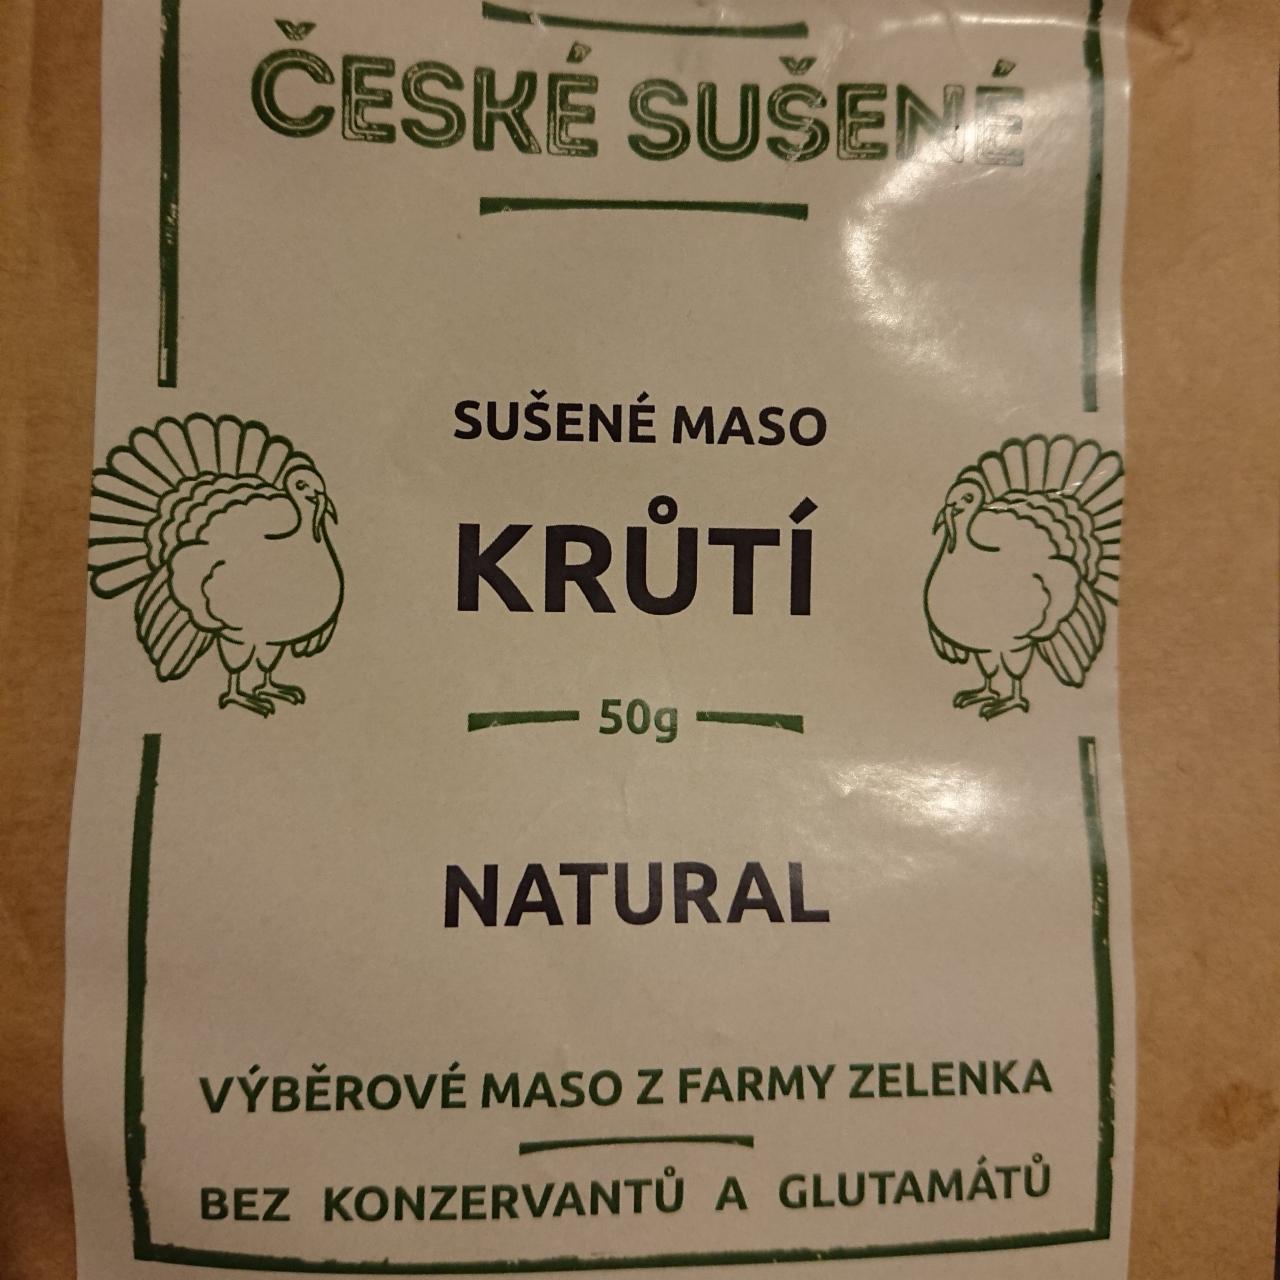 Fotografie - Sušené maso krůtí Natural České sušené